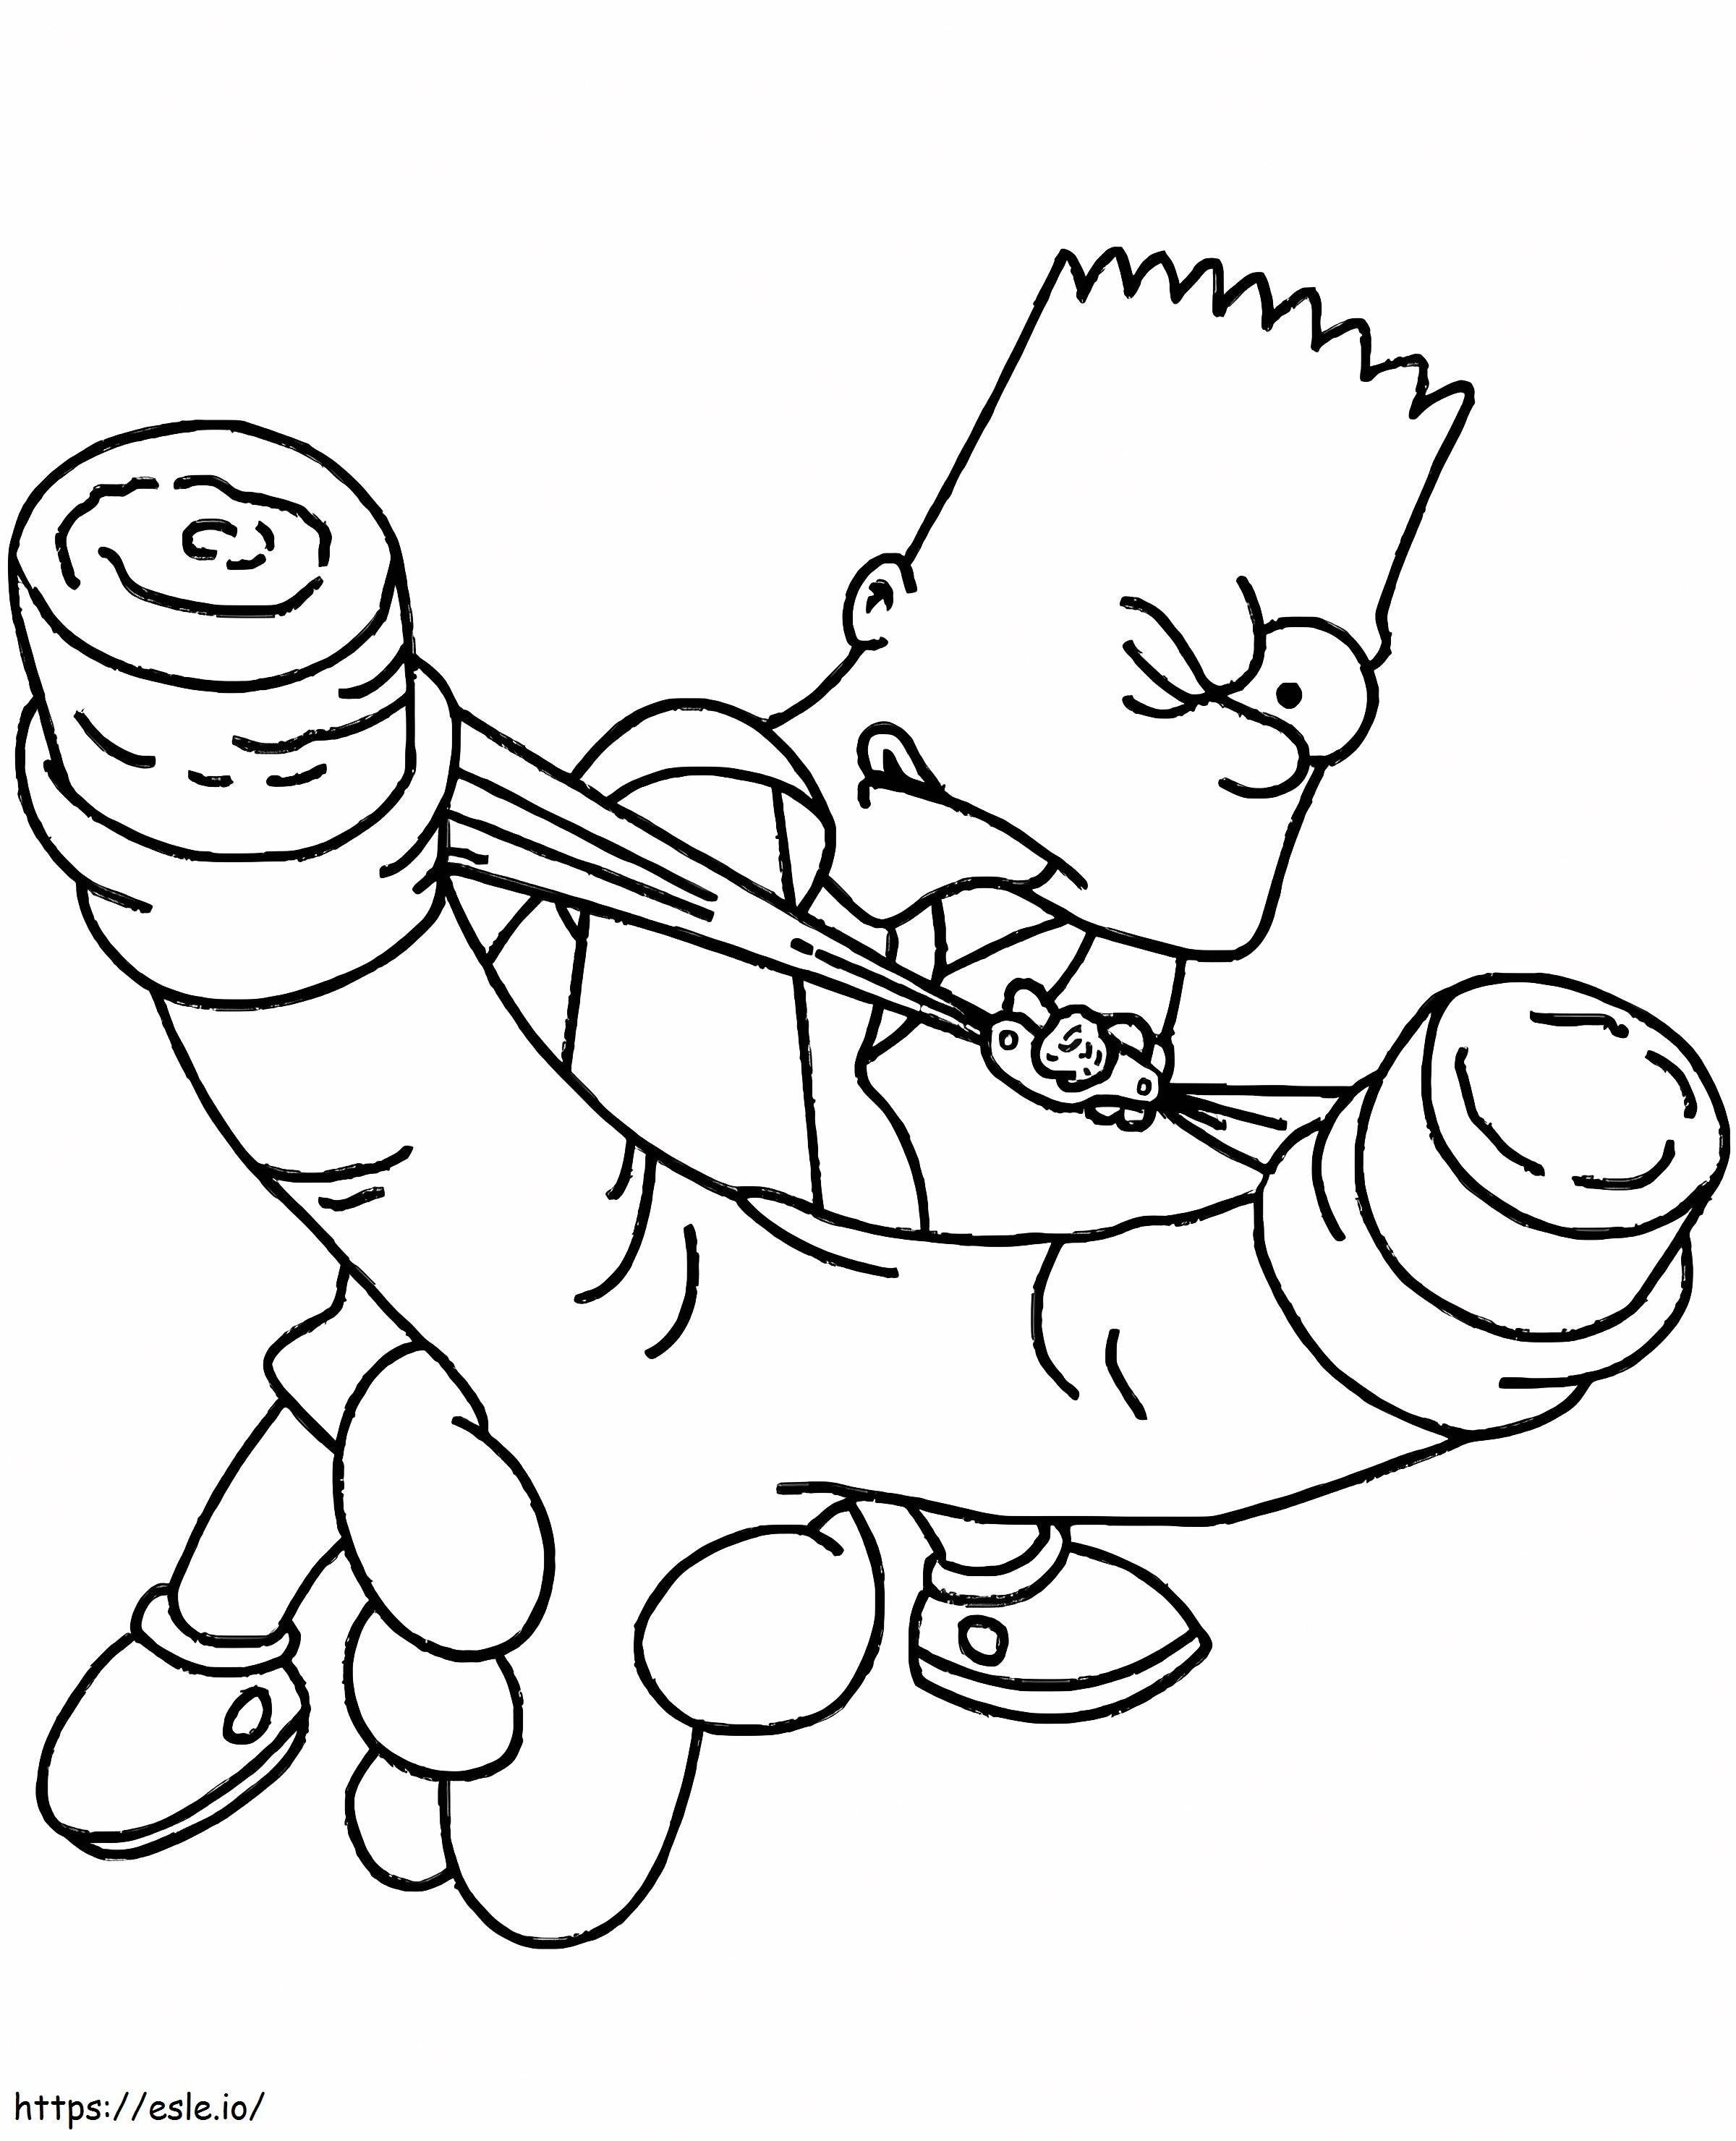 Coloriage Bart Simpson 3 à imprimer dessin